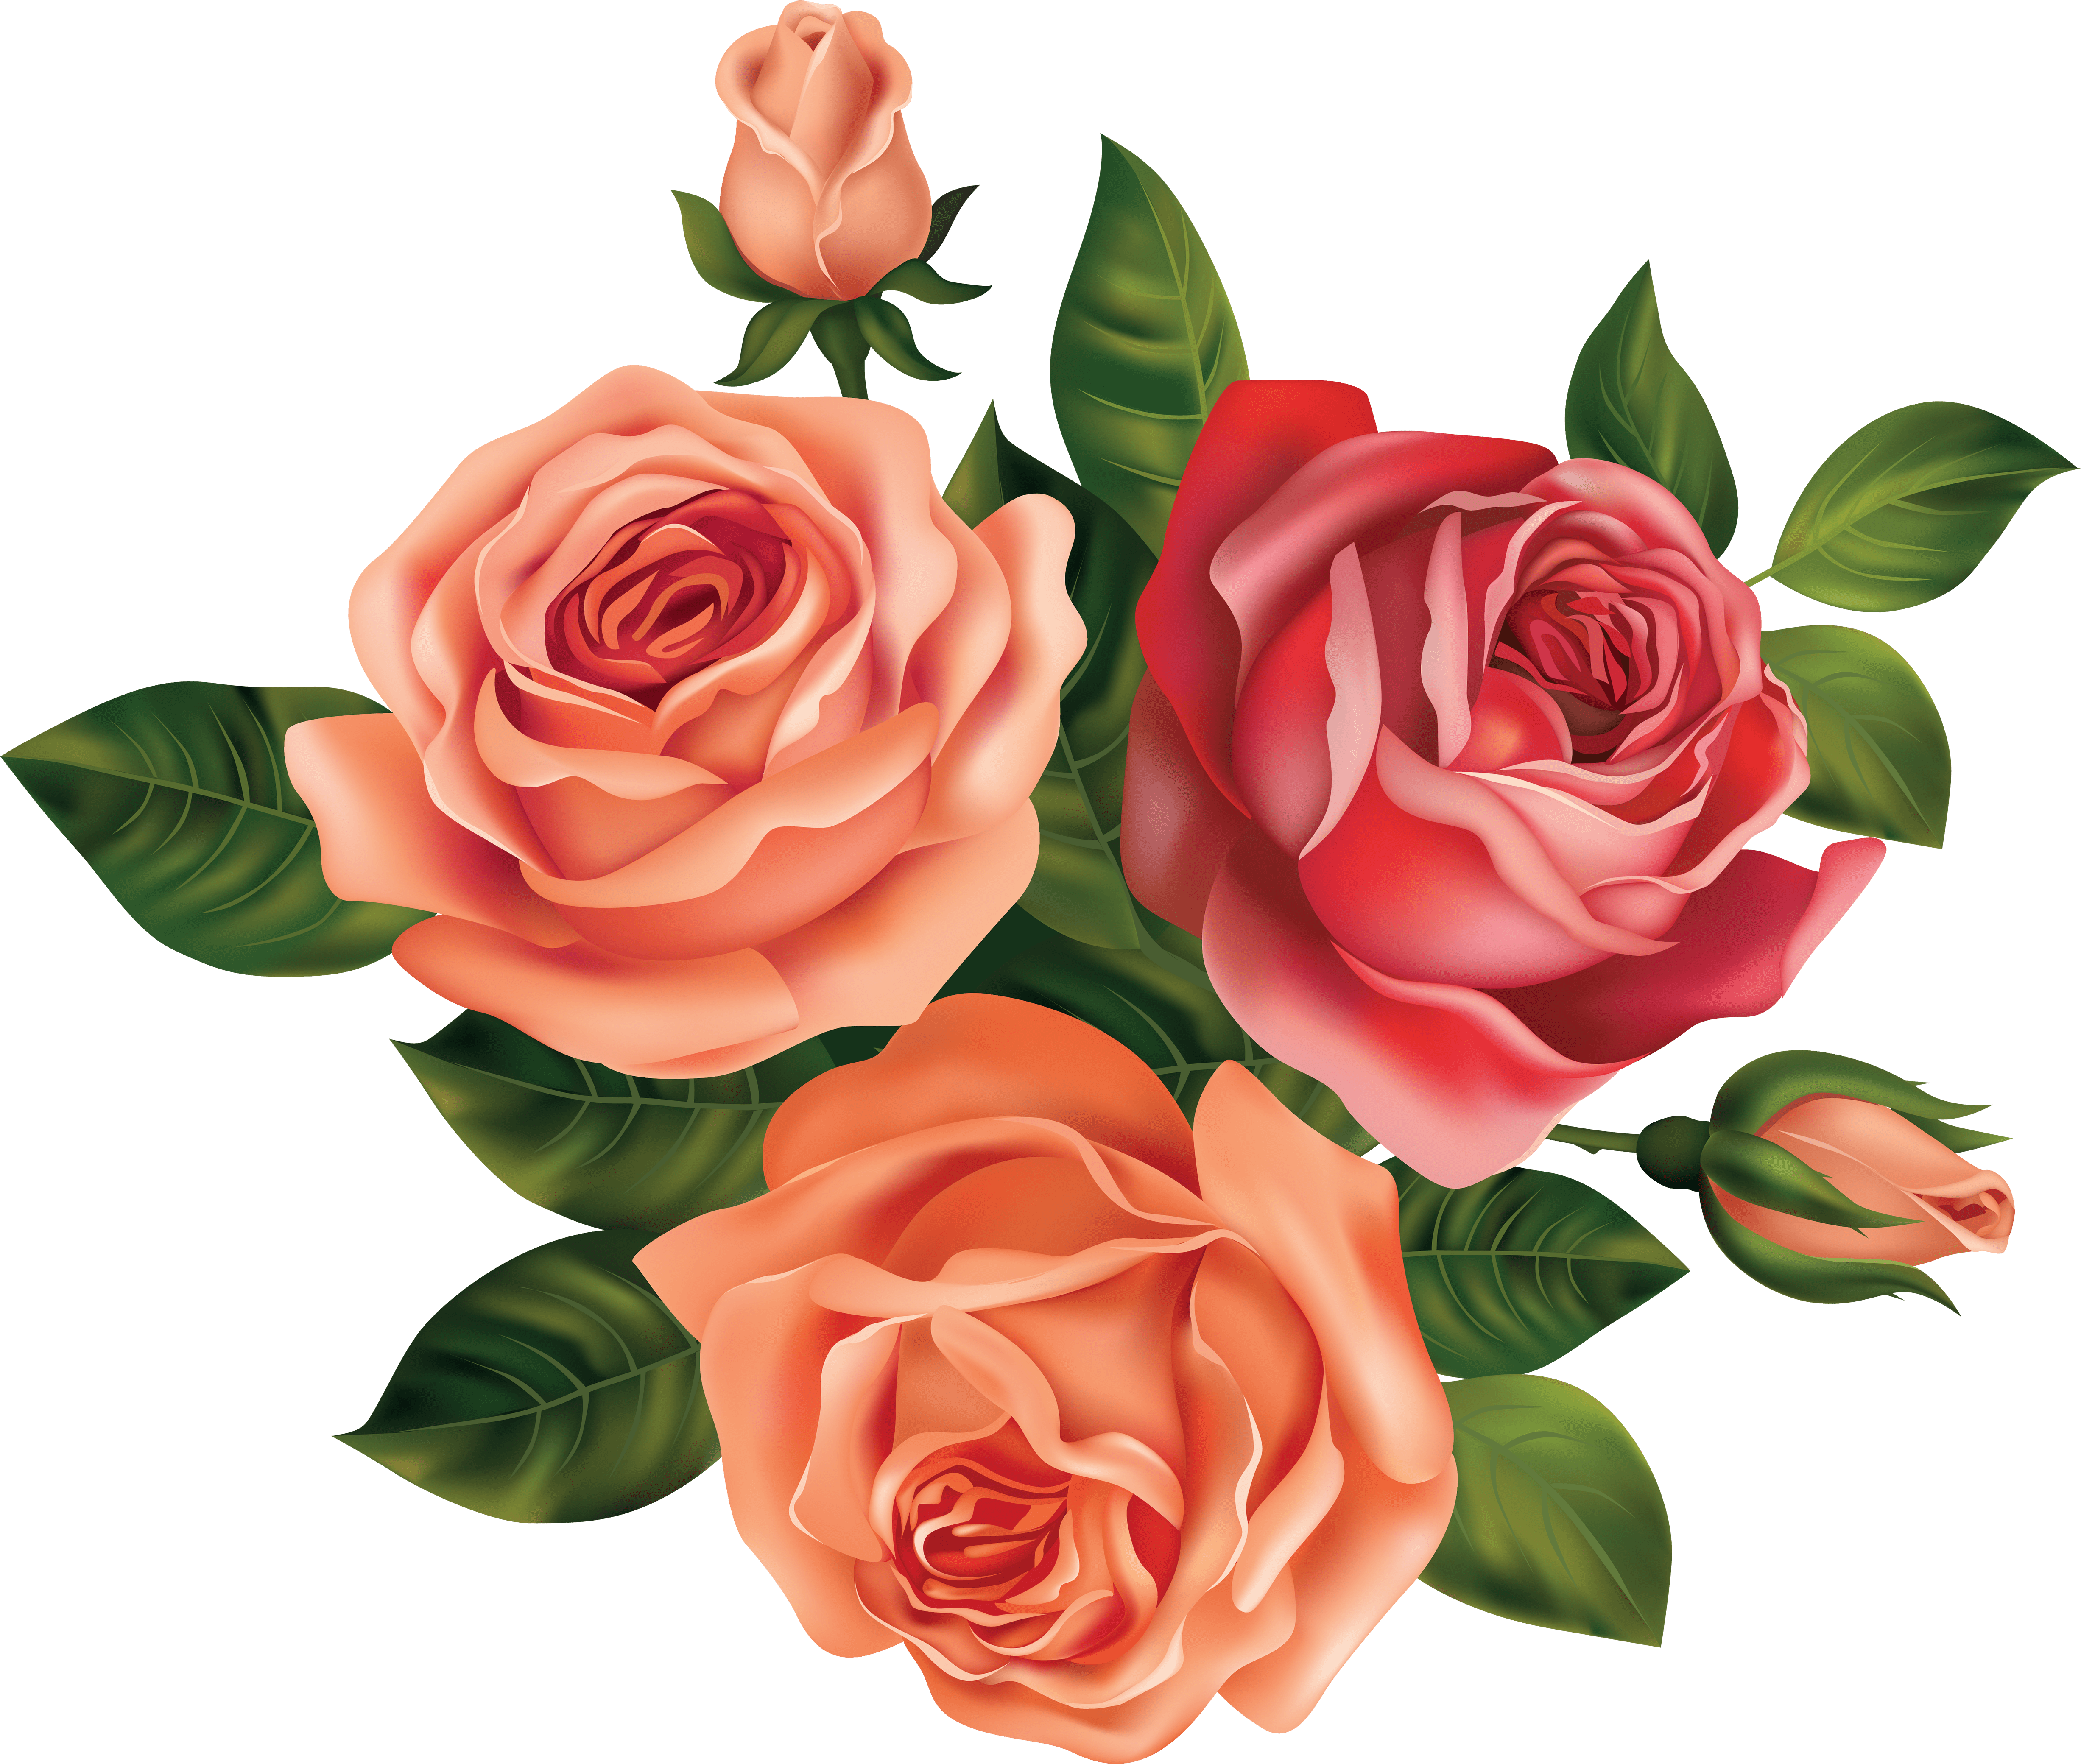 Detail Rose Flowers Image Free Download Nomer 43